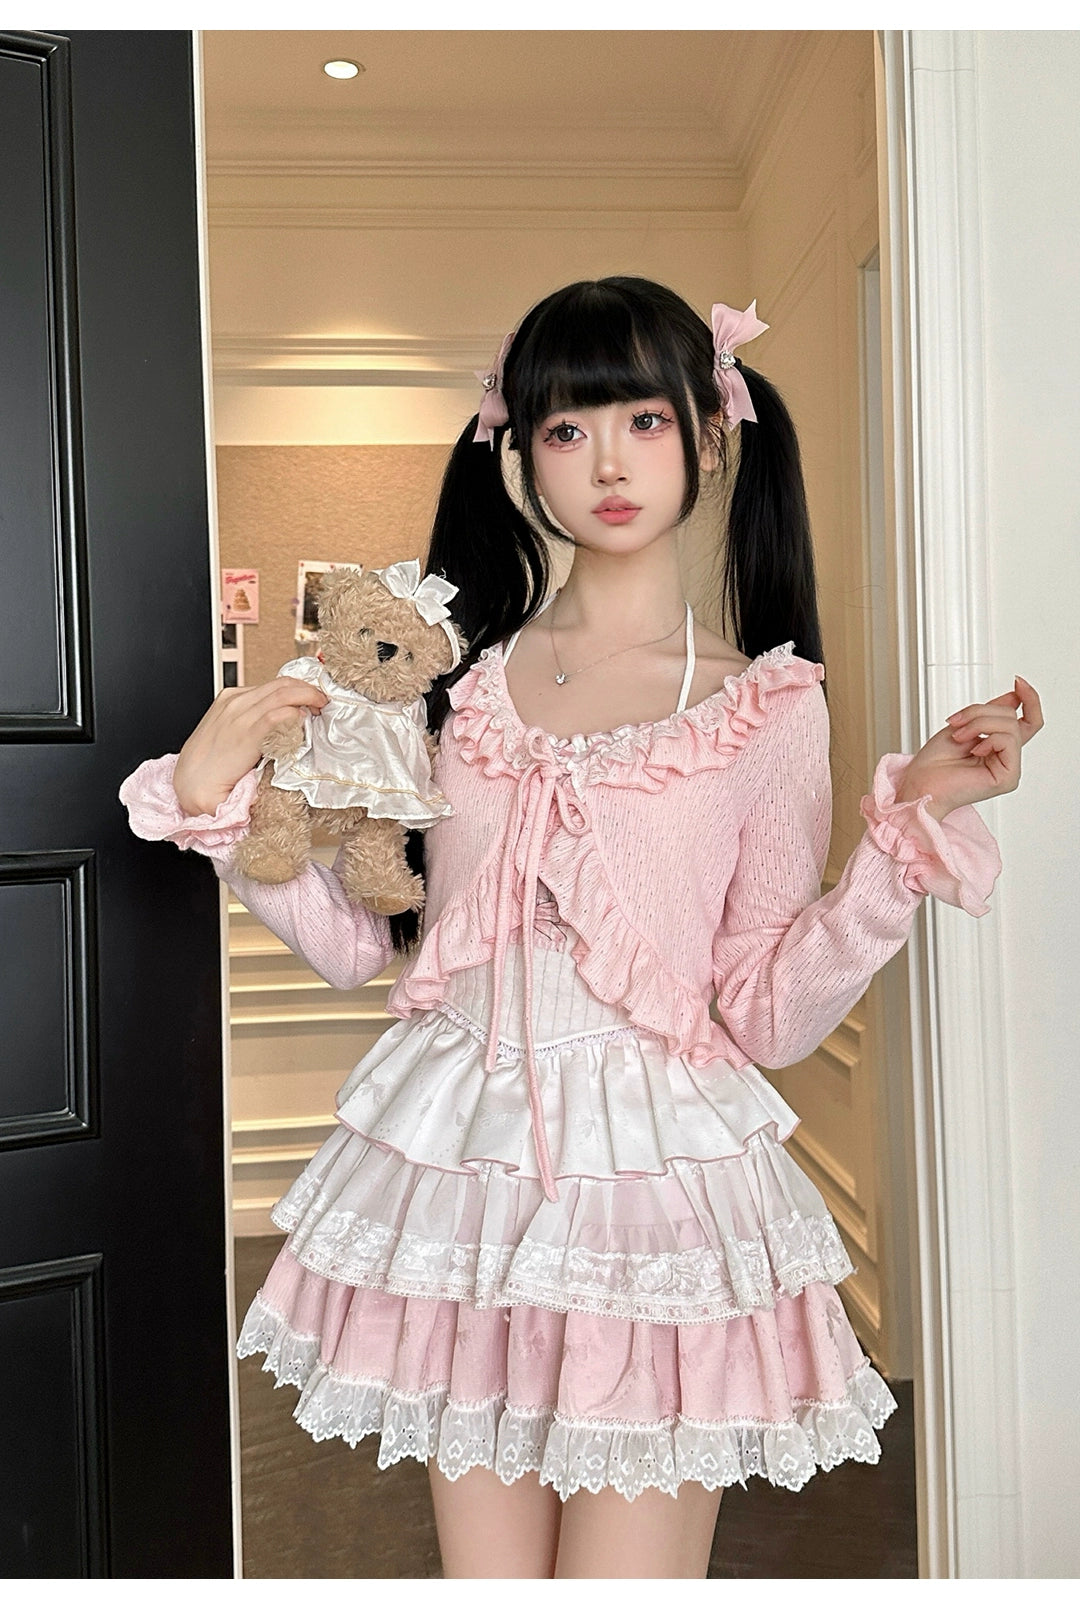 Ryousangata Skirt Set Pink Cardigan White Straps Top 37008:548386